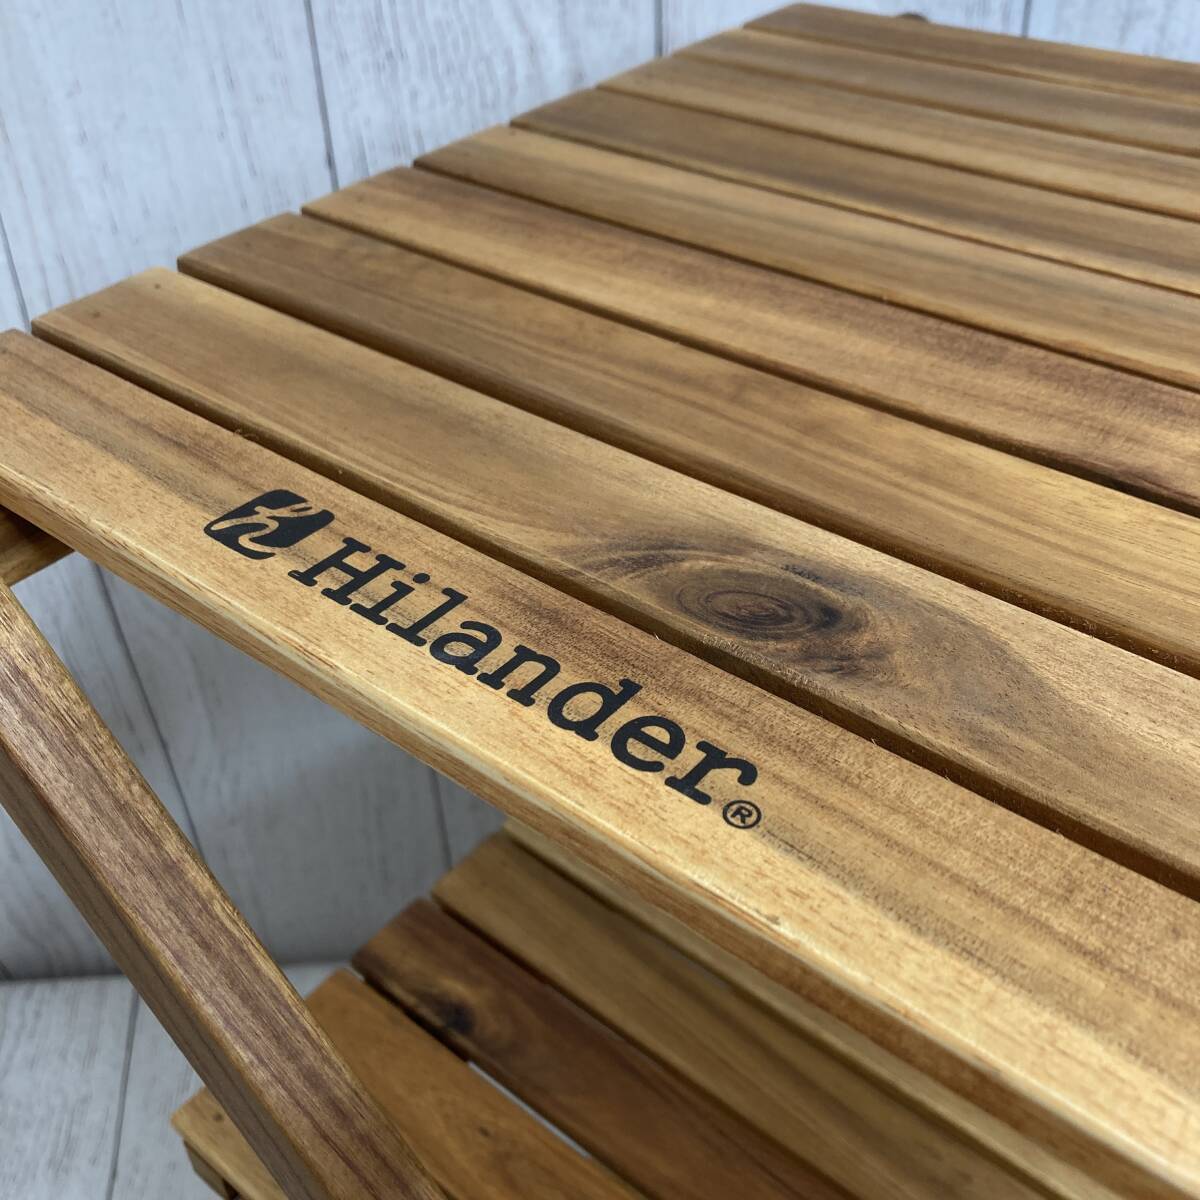 【新品未開封】Hilander(ハイランダー) ウッドラック 3段 専用ケース付き 木製ラック 425 HCTT-001 /Y21551-V3_画像5